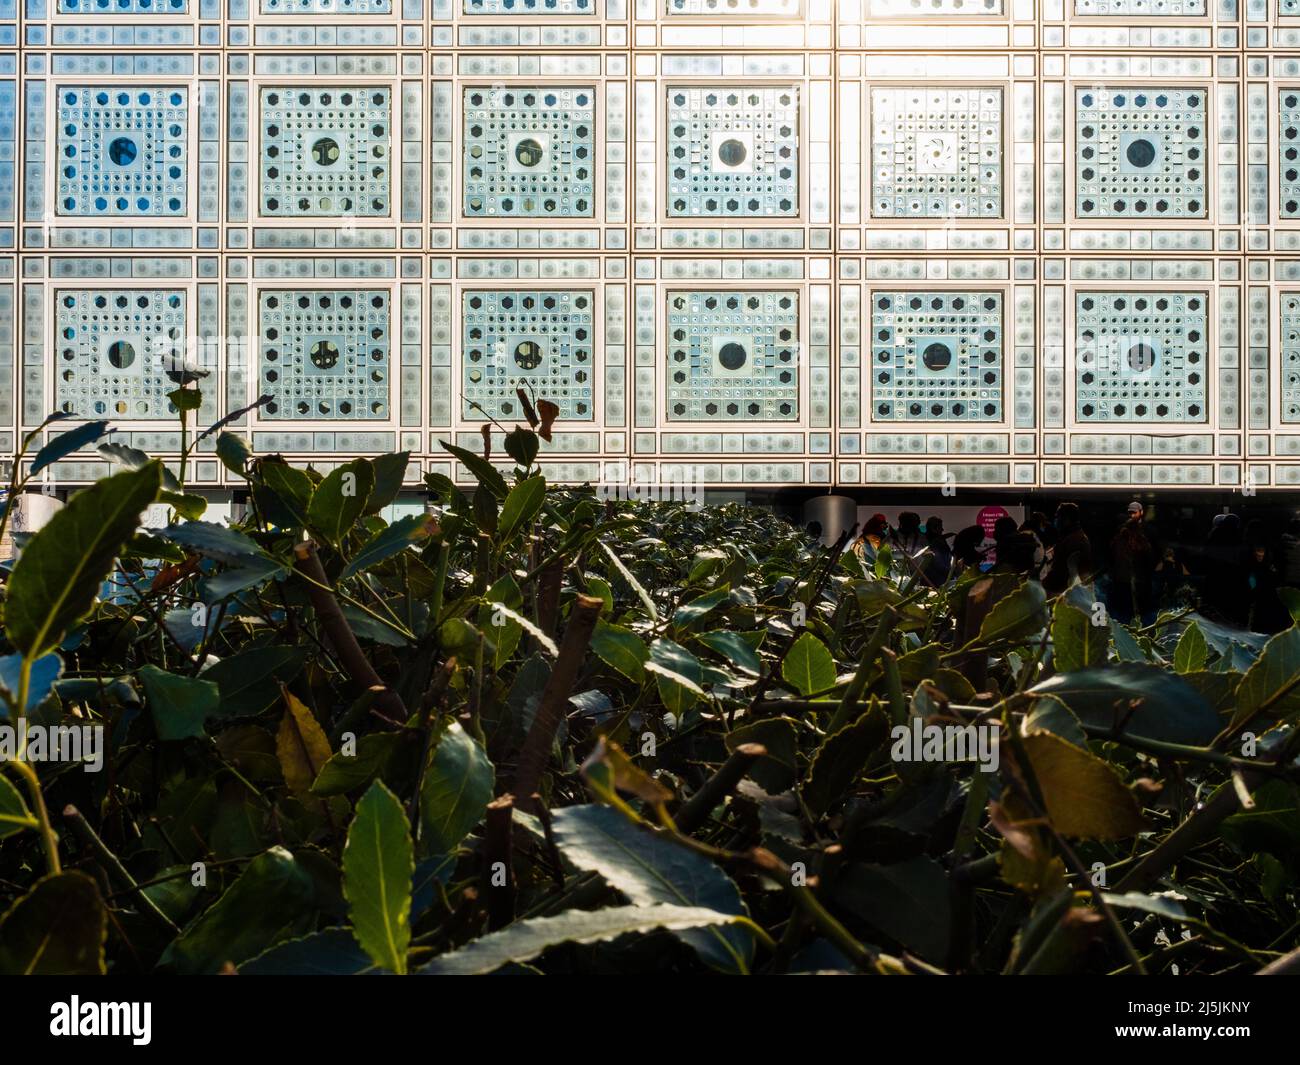 Détails de diaphragme ouverture sur les fenêtres formant mashrabiya motifs sur un musée parisien nommé institut du monde arabe Banque D'Images